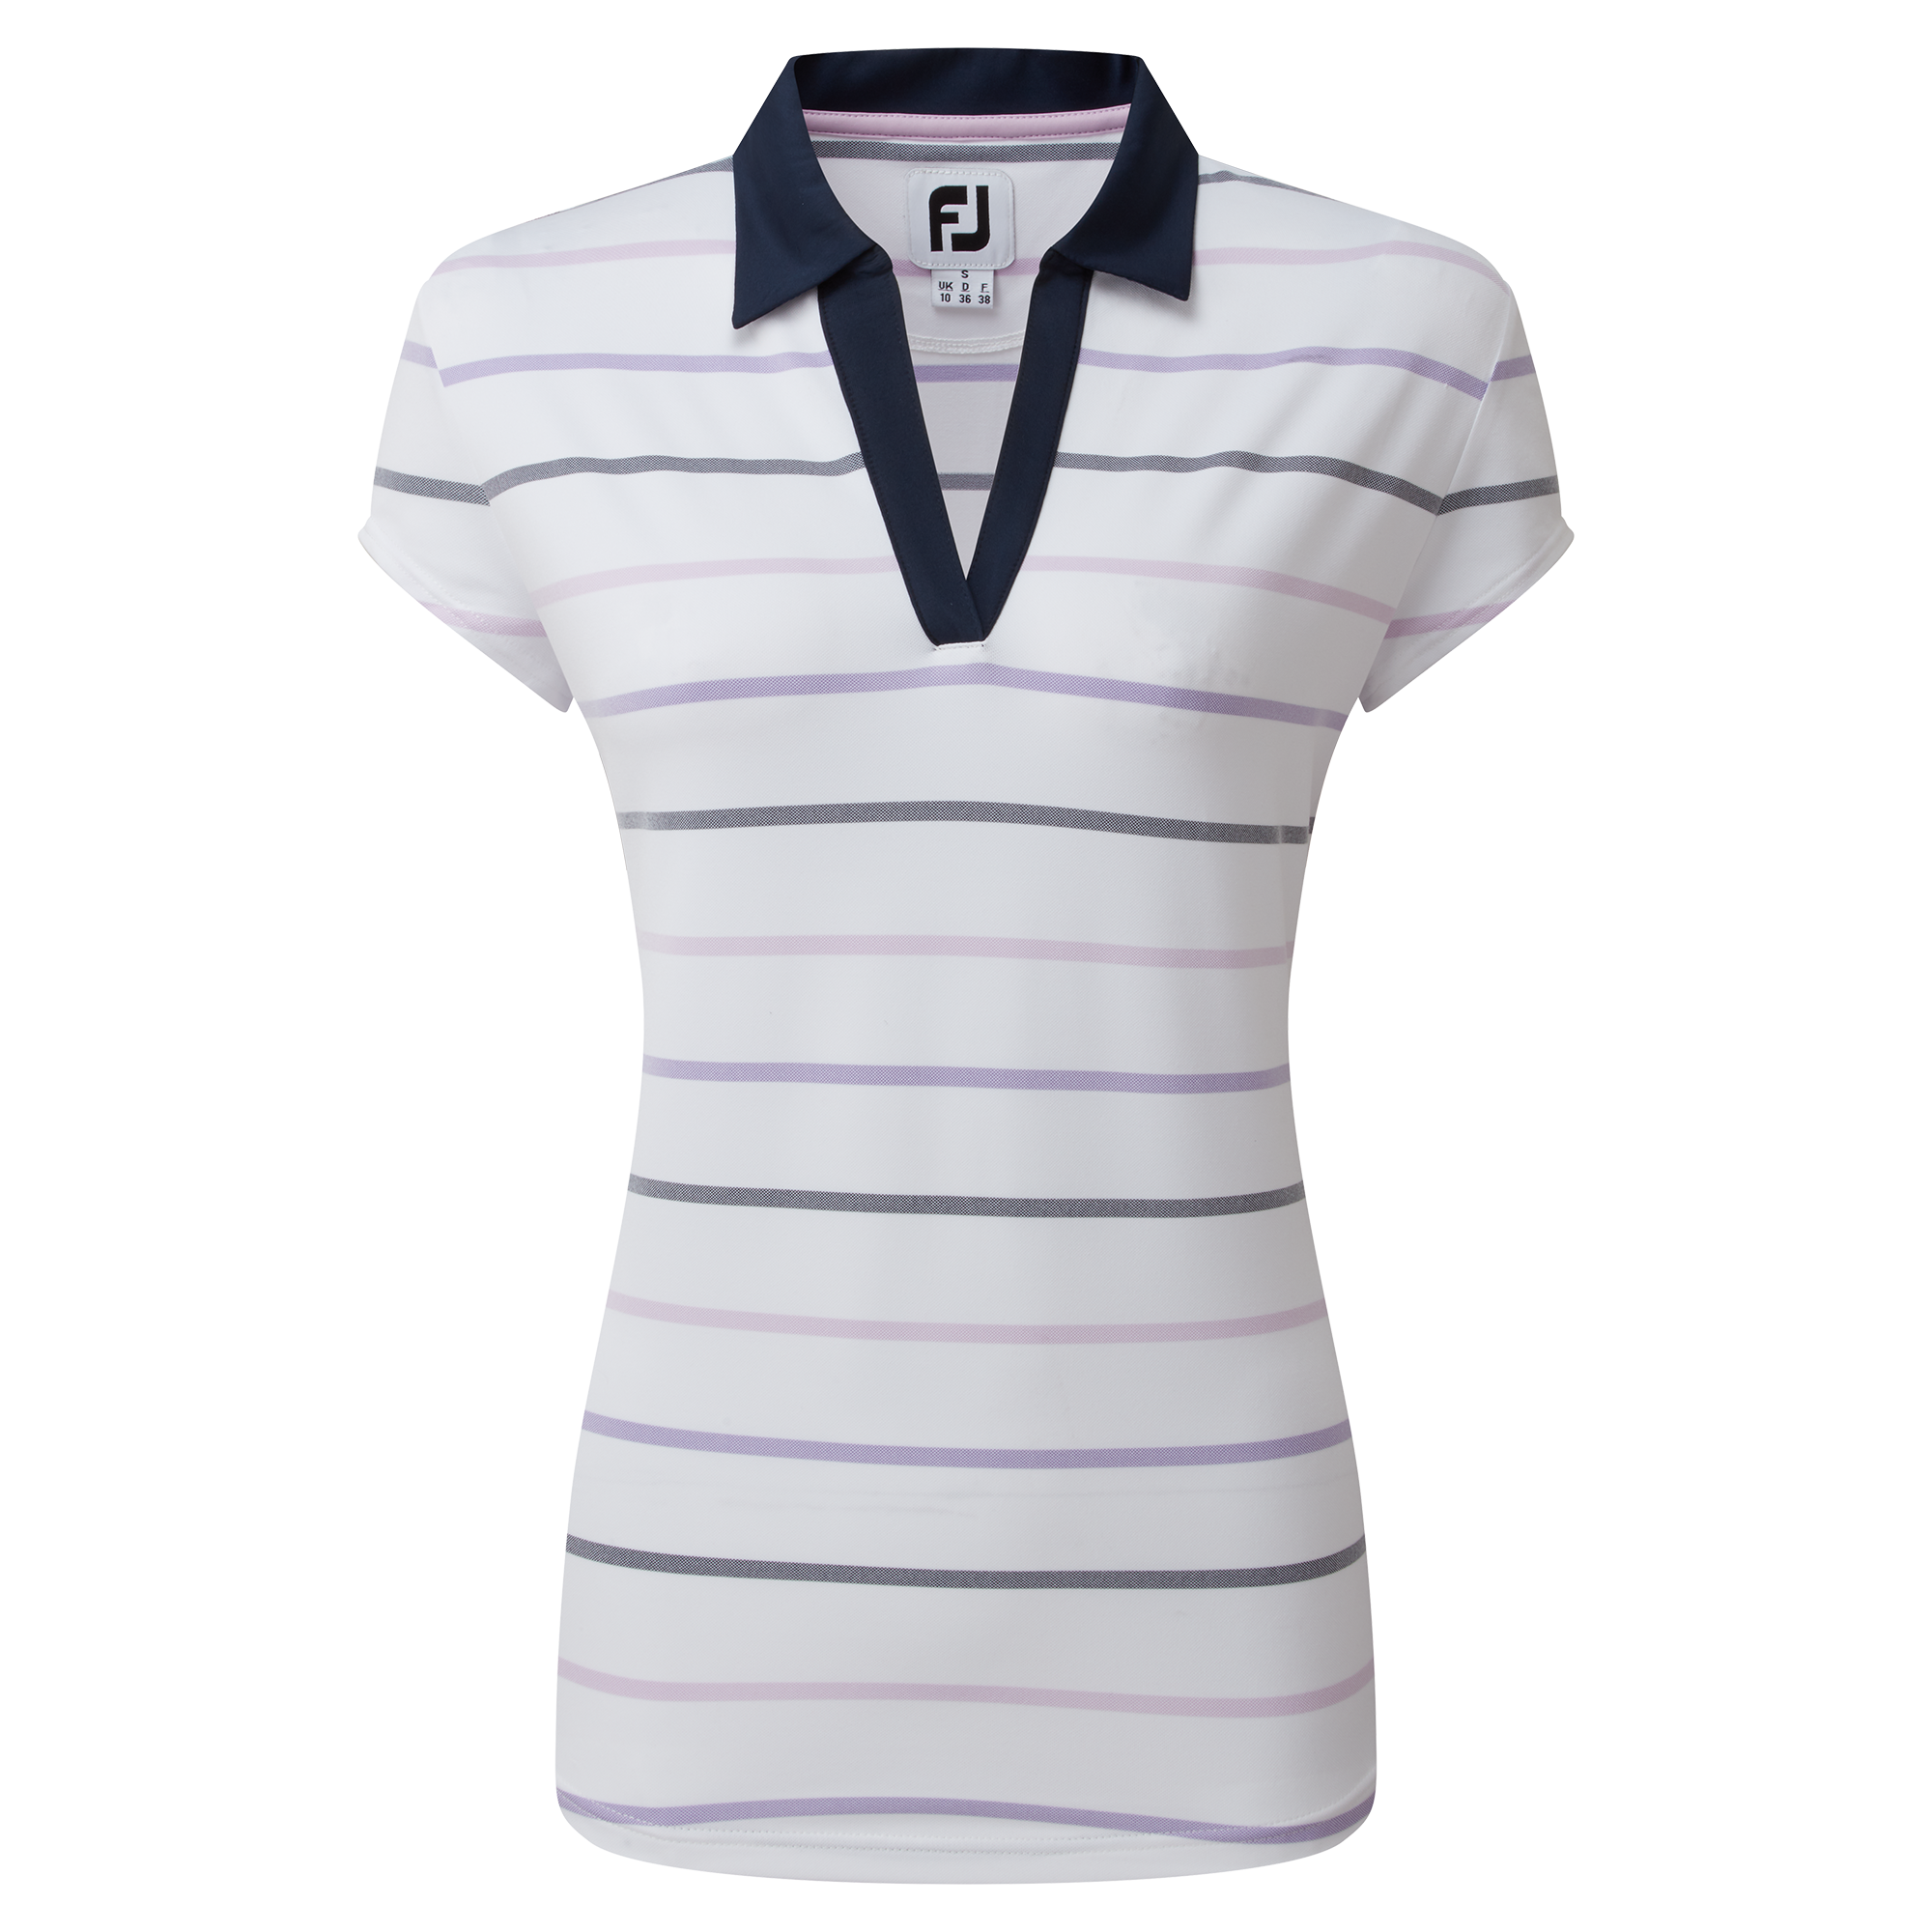 FootJoy Birdseye Stripe Smooth Jacquard dámské golfové triko, bílé, vel. M